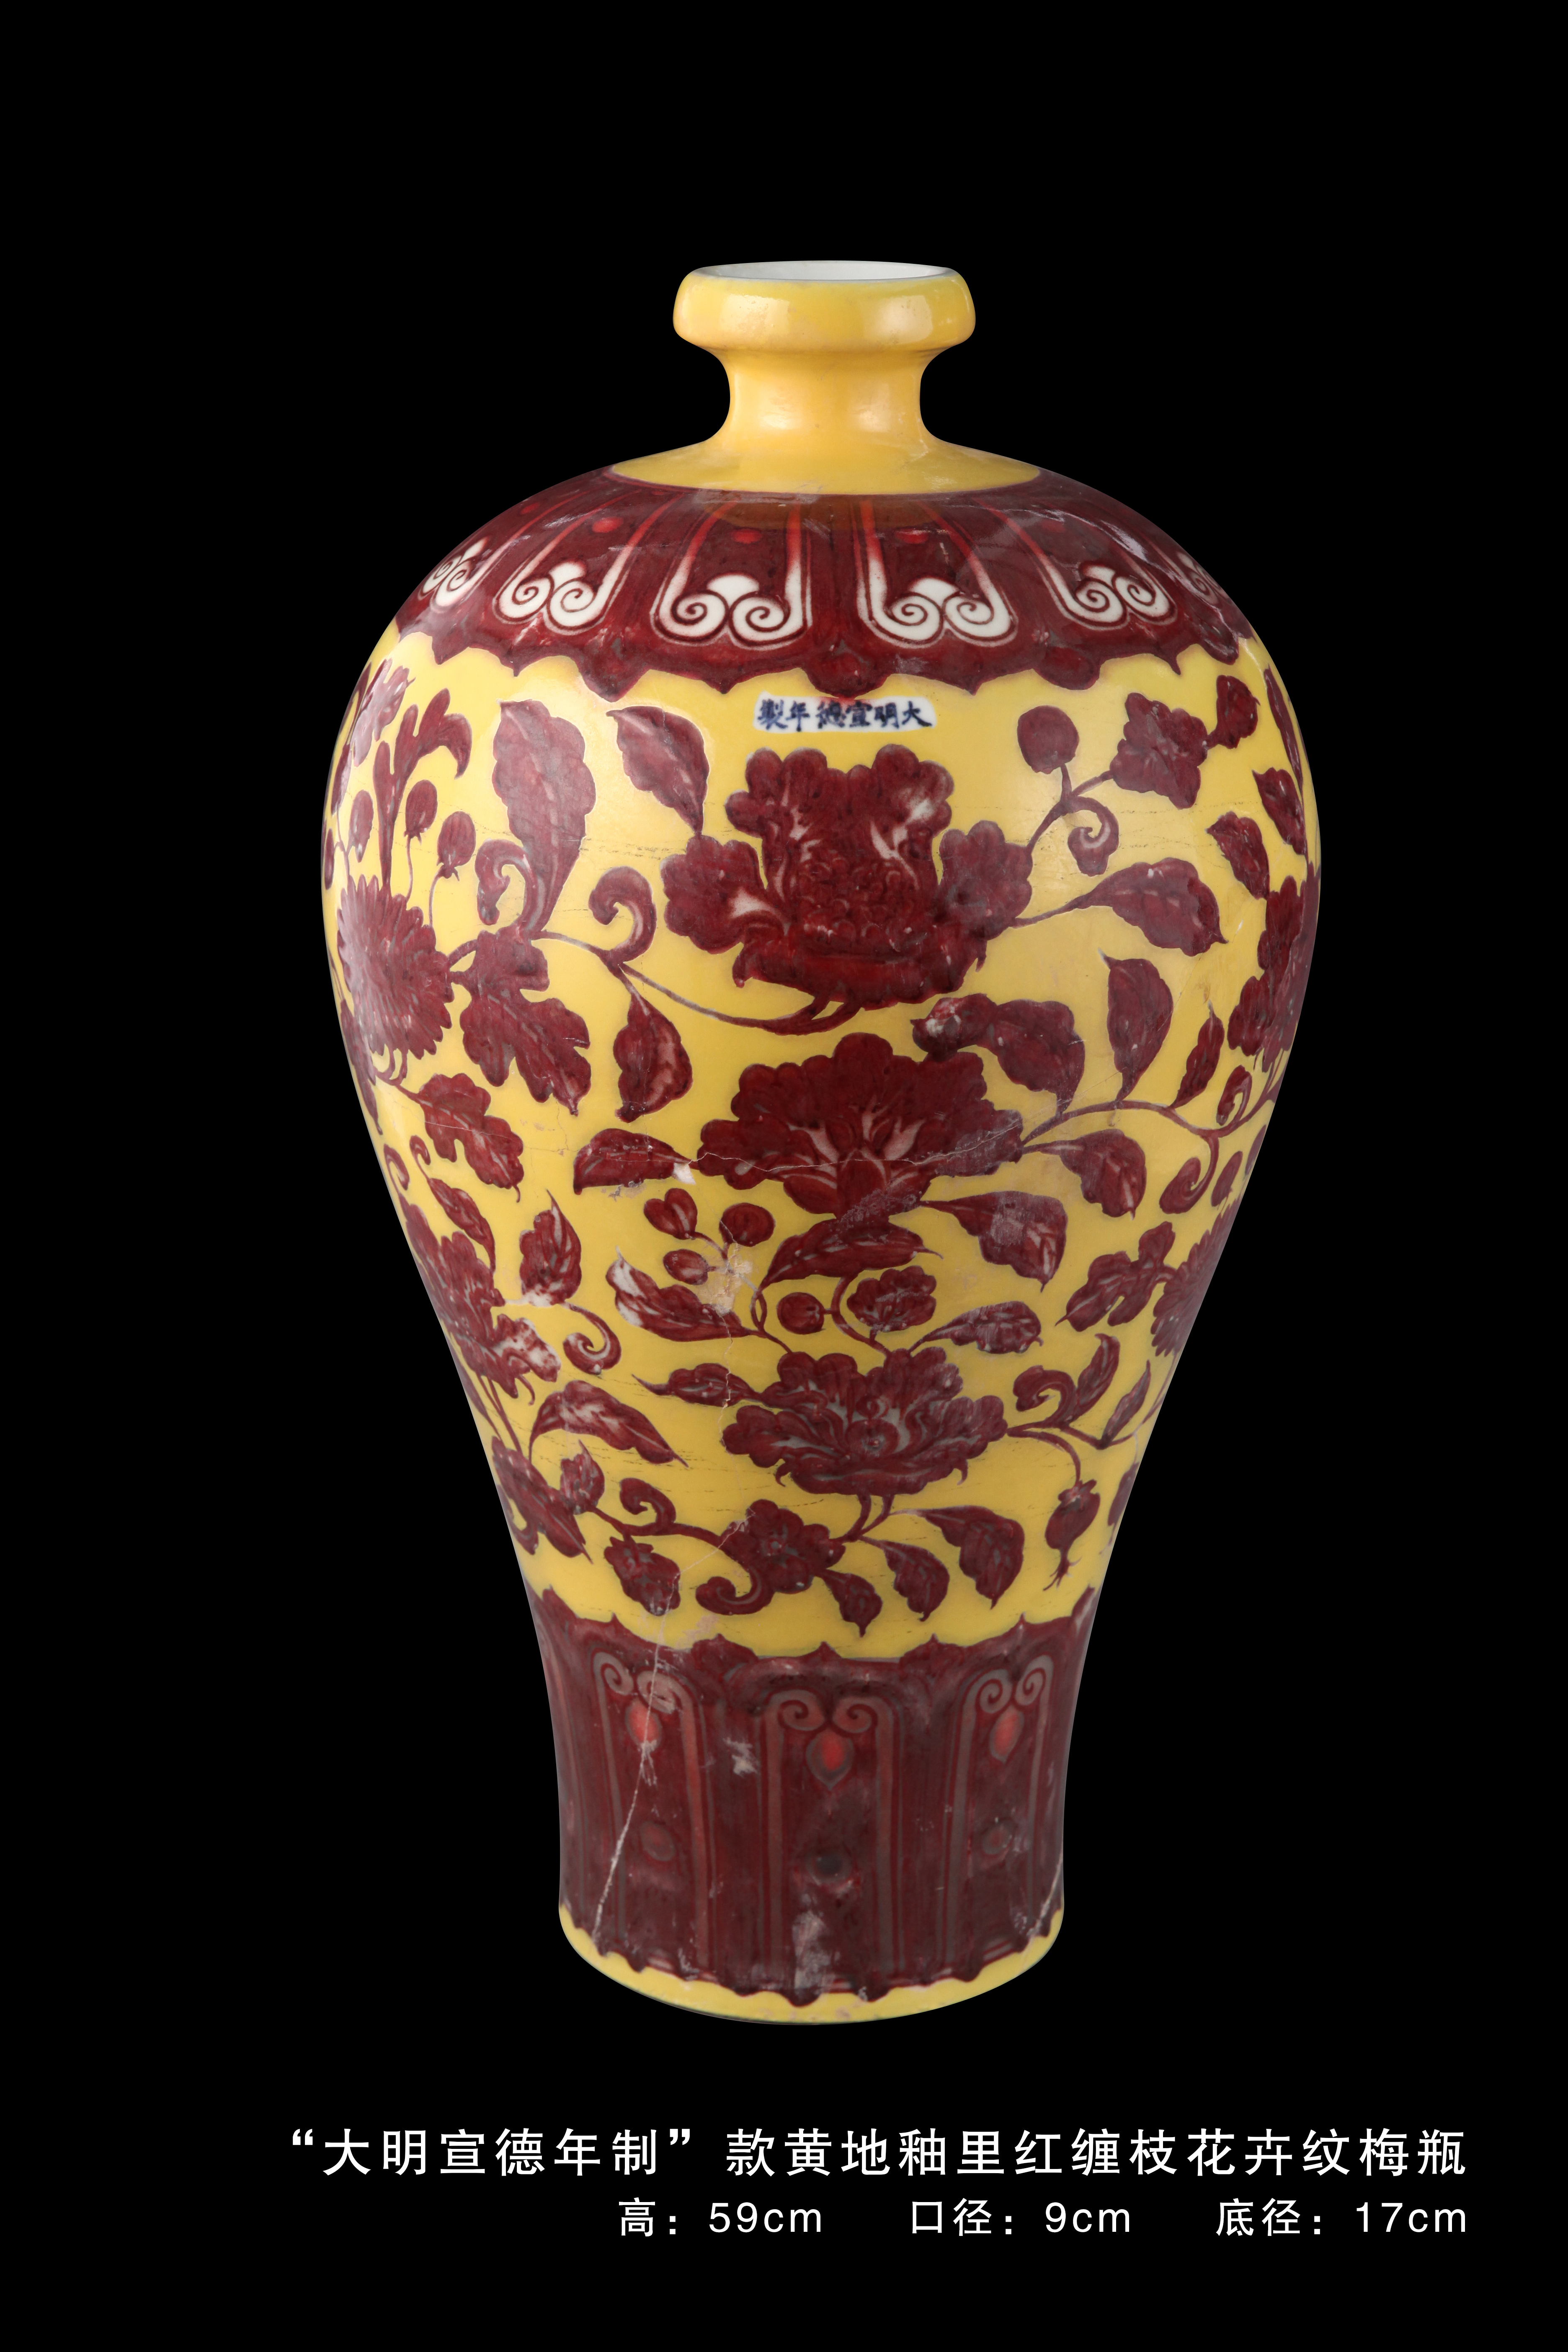 "大明宣德年制"款黄地釉里红缠枝花卉纹梅瓶 作品分类 陶瓷紫砂- 瓷器